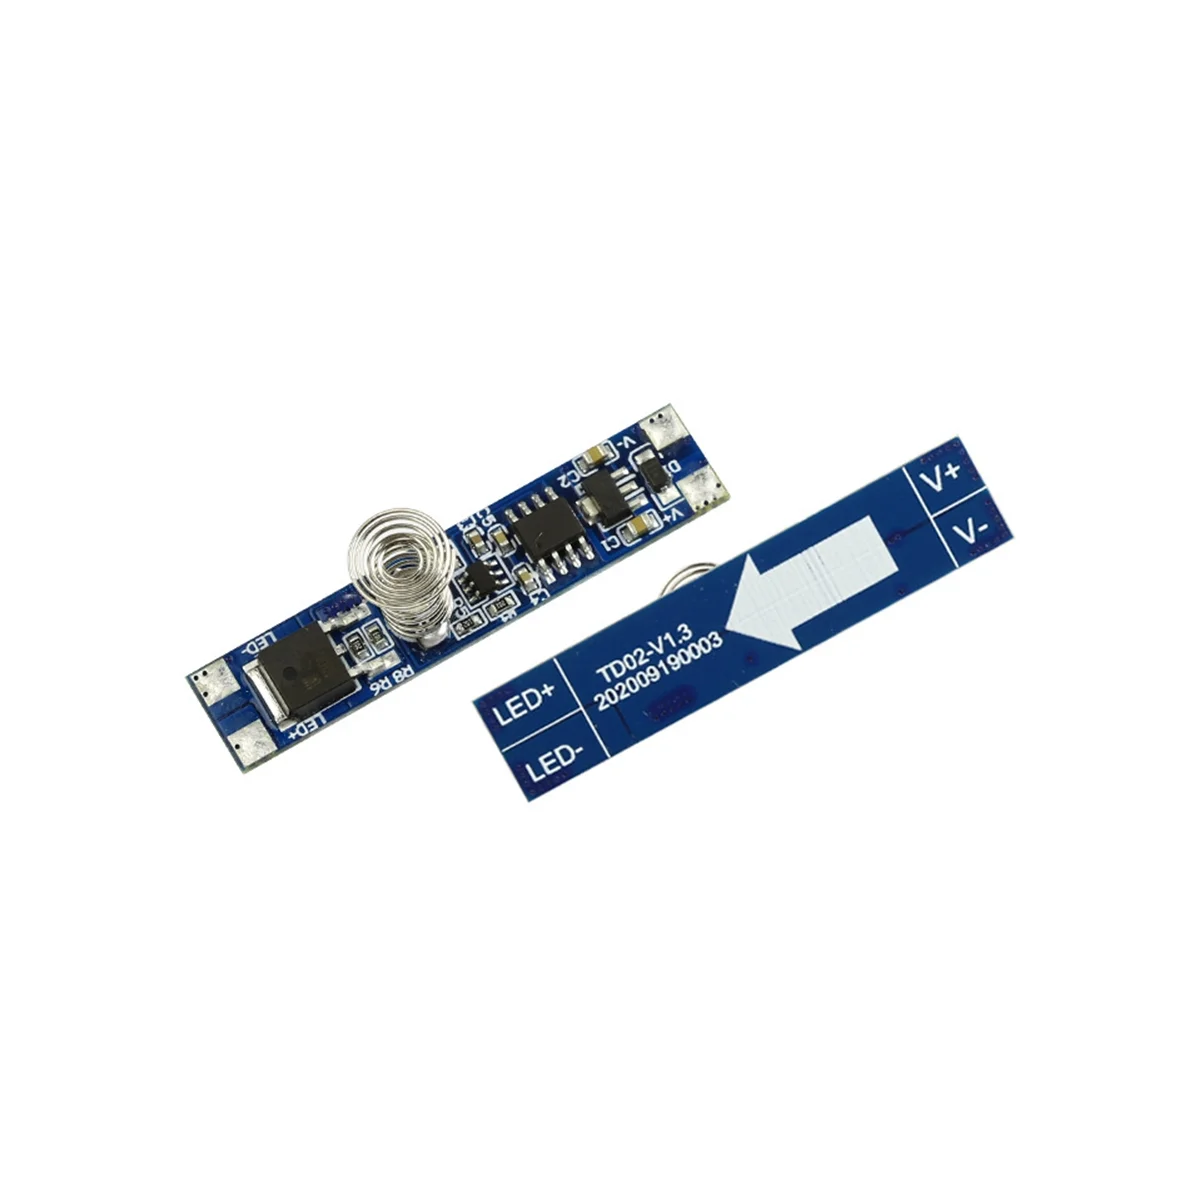 5V-24V 8A intelligens intelligens LED fényszabályozó kapacitív érzékelő modul PCB fényerő-szabályozó vezérlő érintőkapcsoló - 2